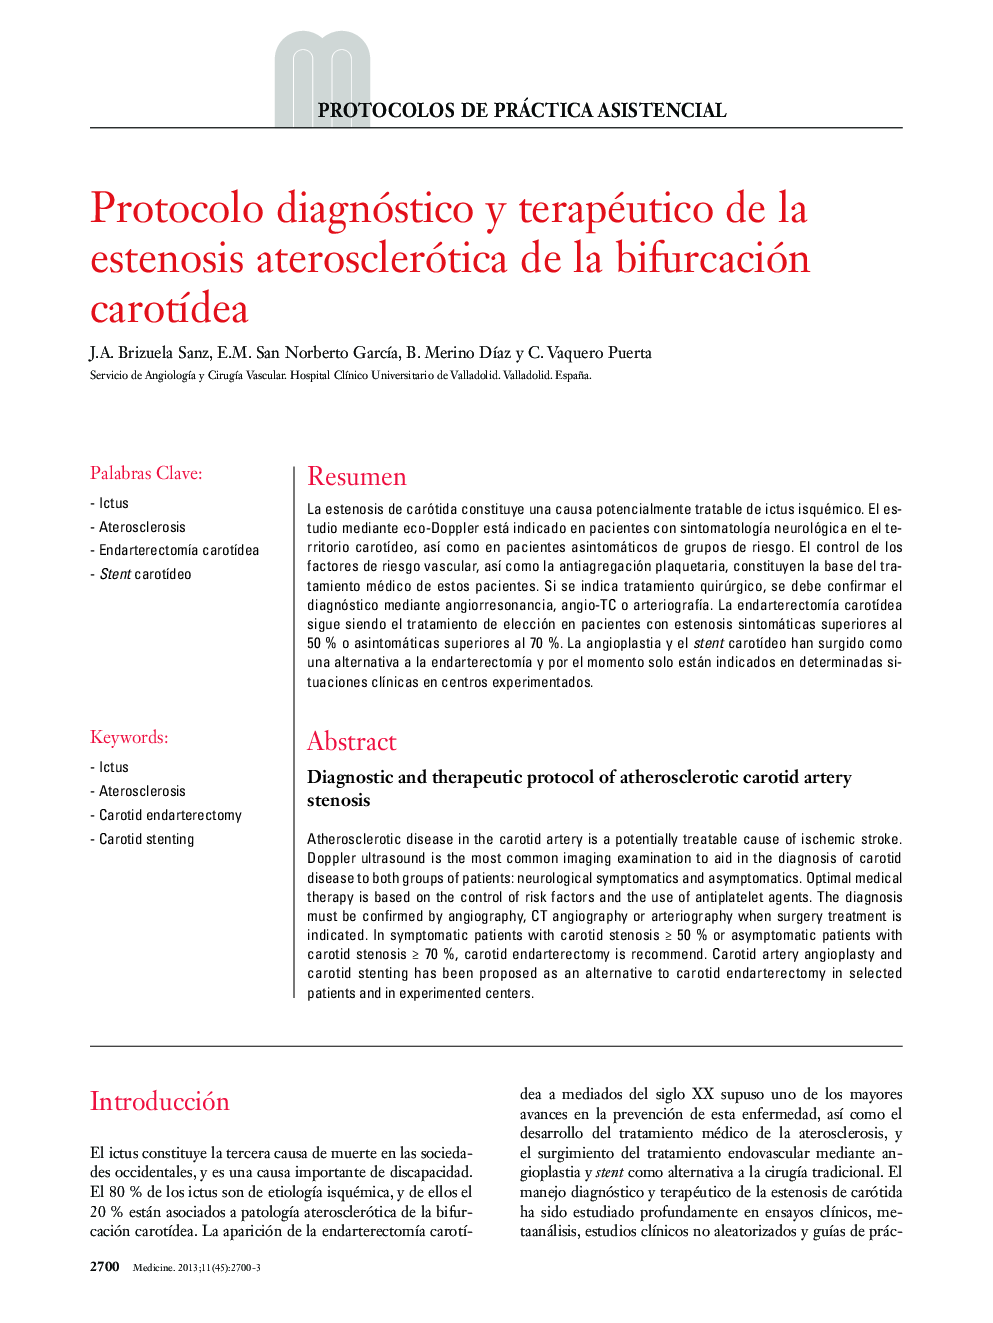 Protocolo diagnóstico y terapéutico de la estenosis aterosclerótica de la bifurcación carotídea